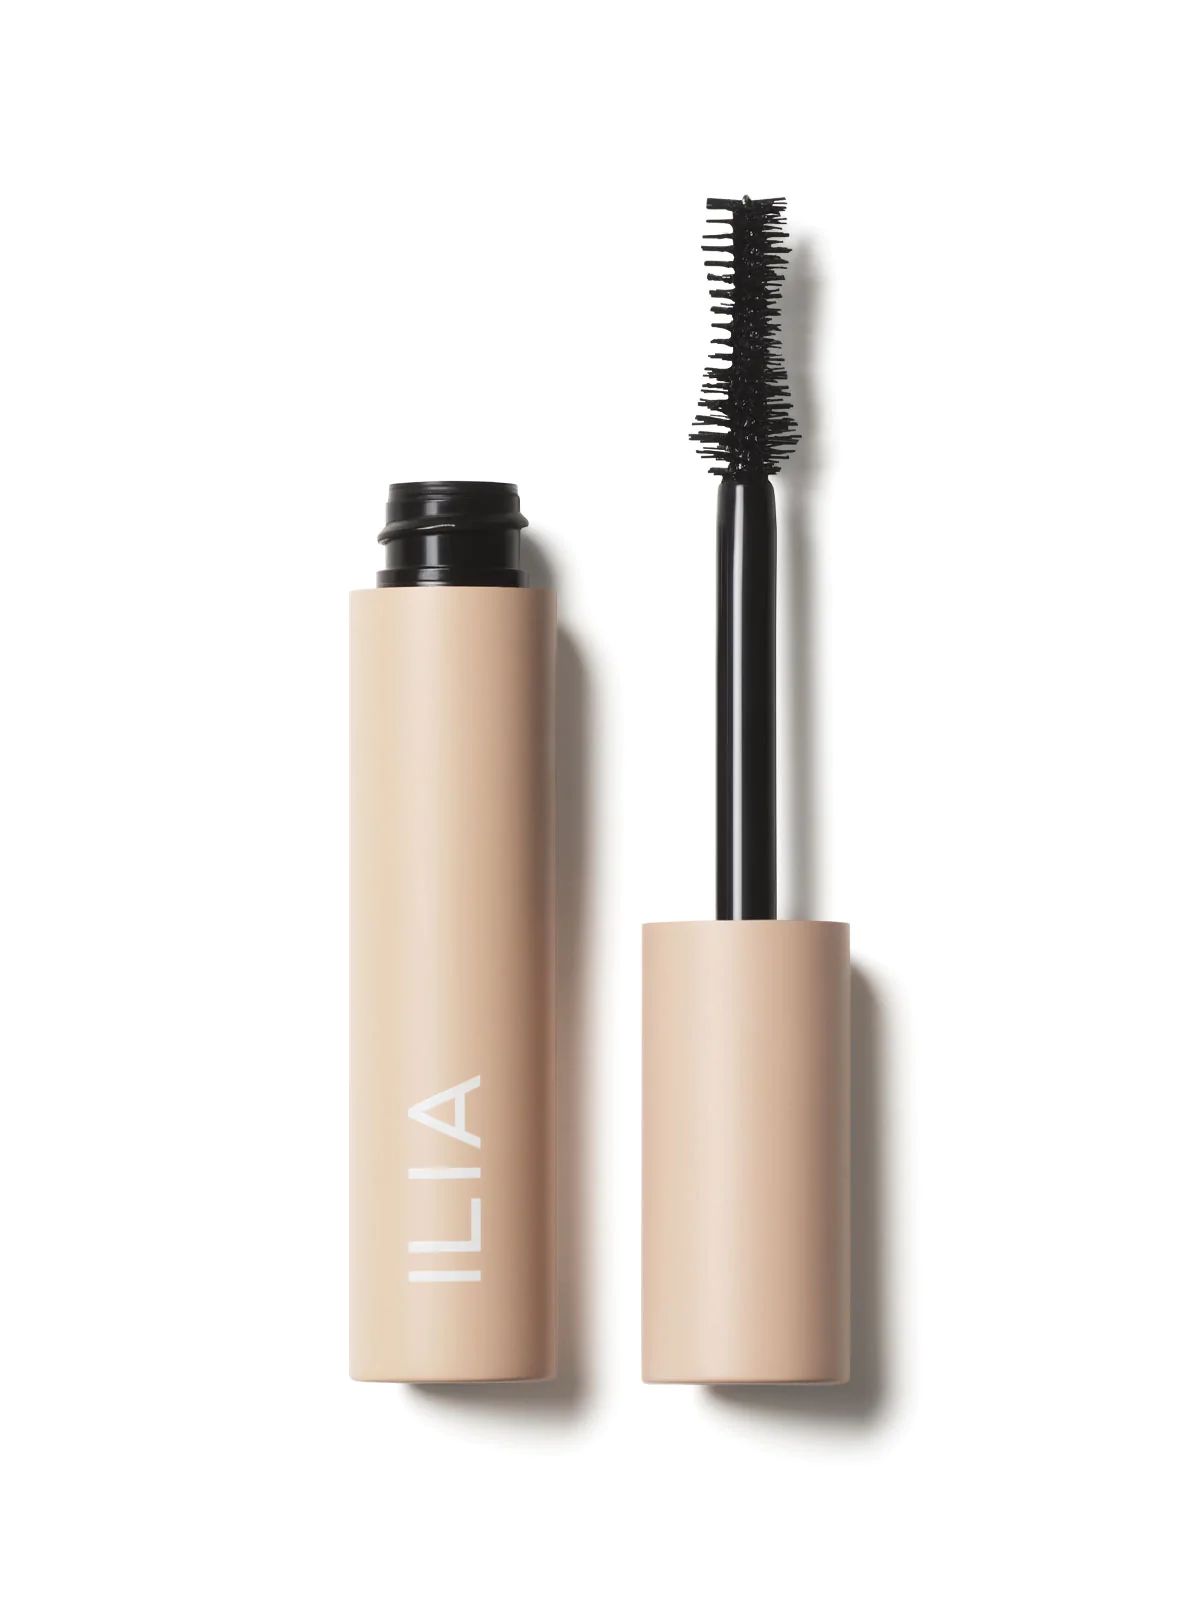 ILIA Fullest Volumizing Mascara - Fullest Volumizing Mascara - 0.32fl oz | 9.5ml | ILIA Beauty